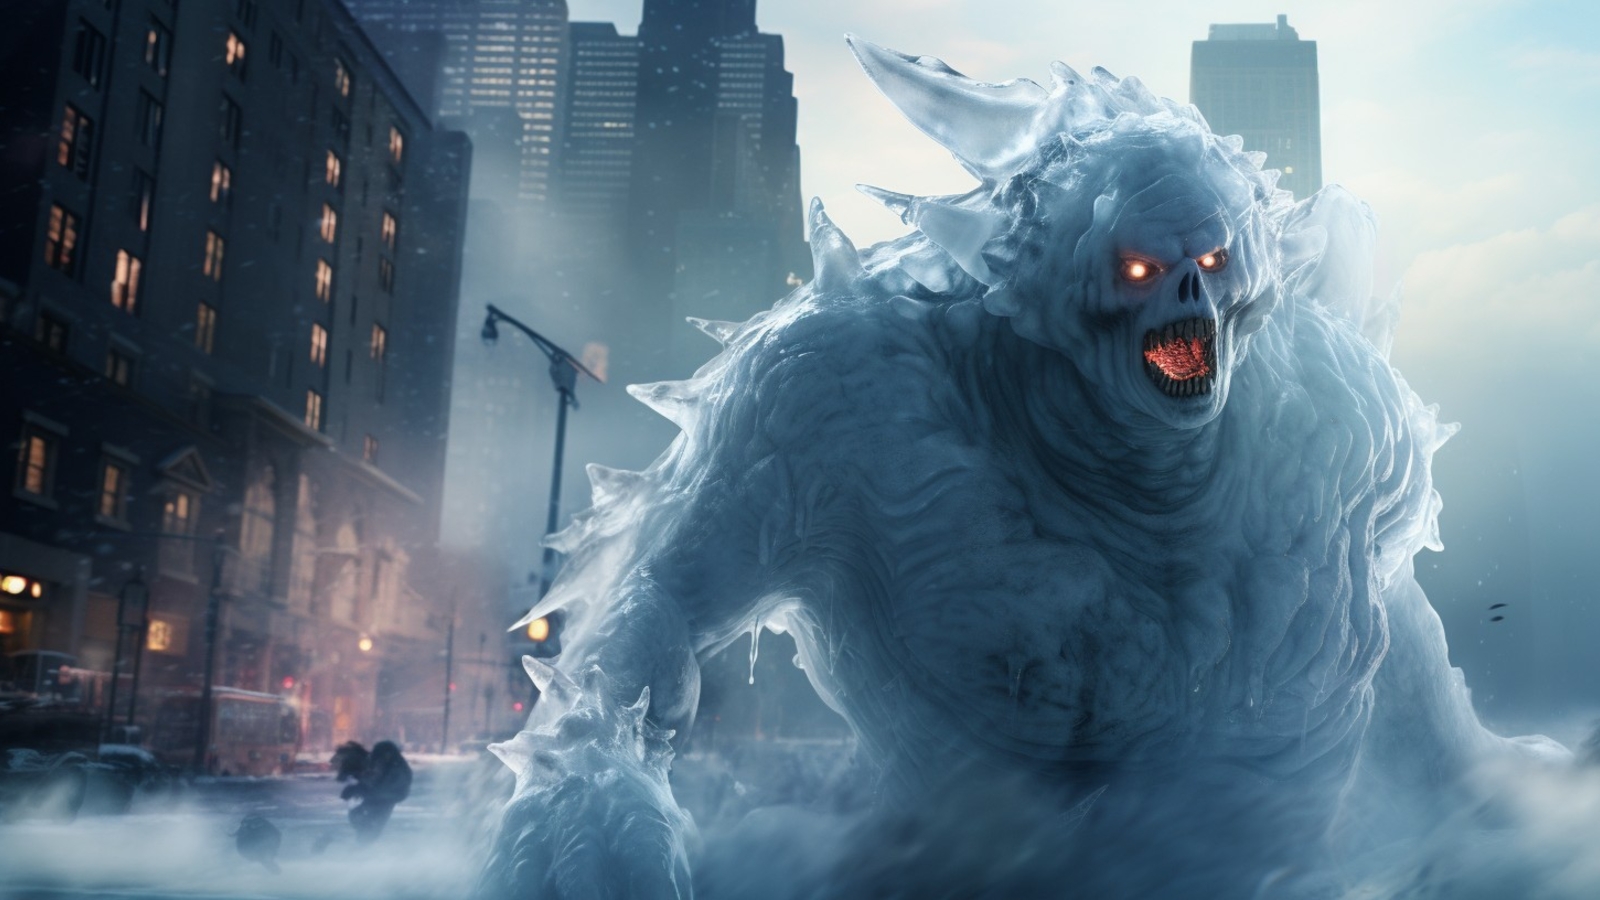 Trailer zu "Ghostbusters Frozen Empire" oe24.tv